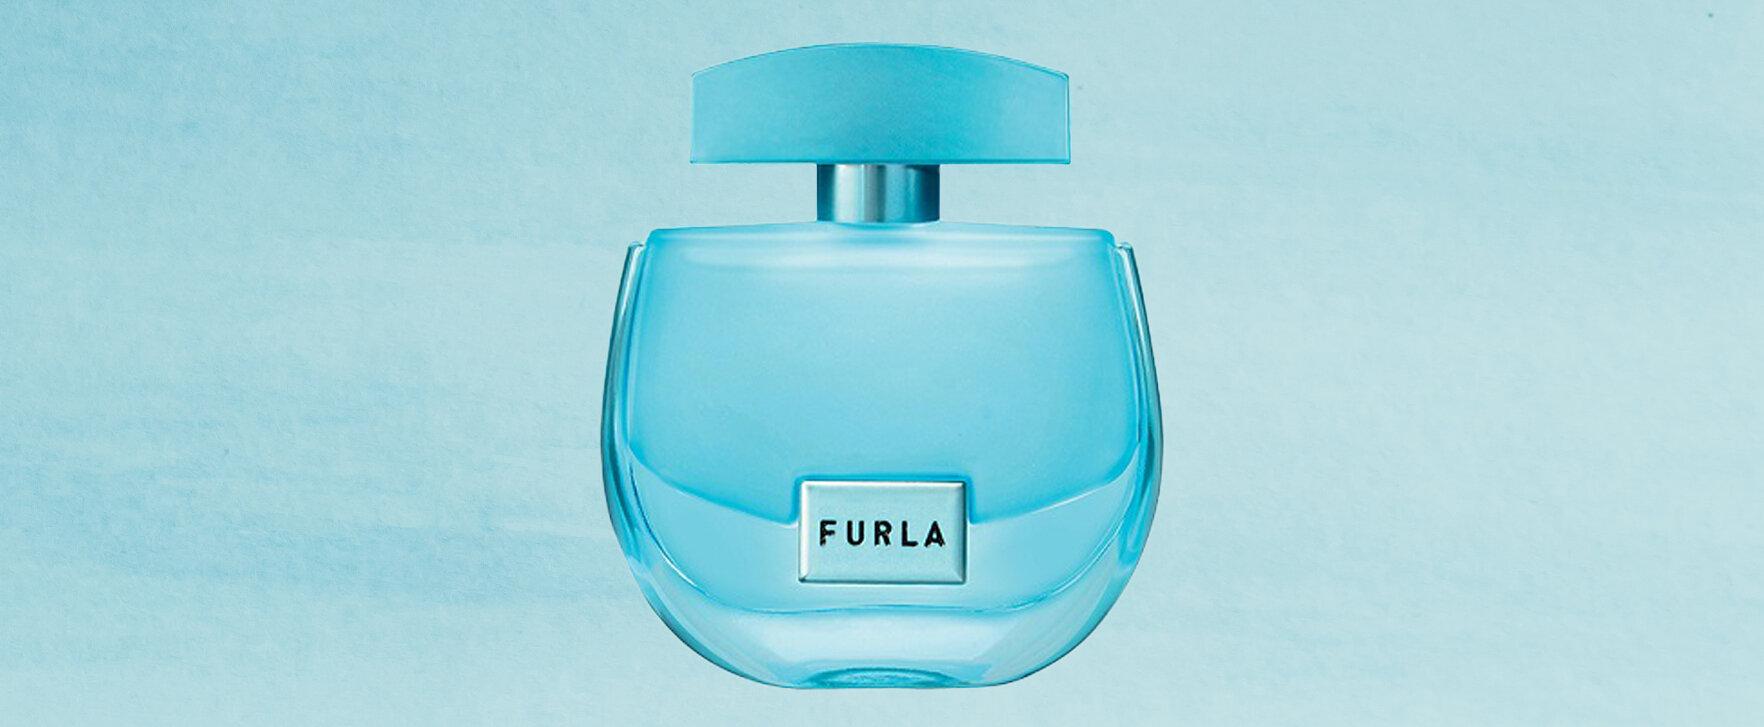 „Unica“ - neues Parfum von Furla mit Akkord aus Pistazie und Salz